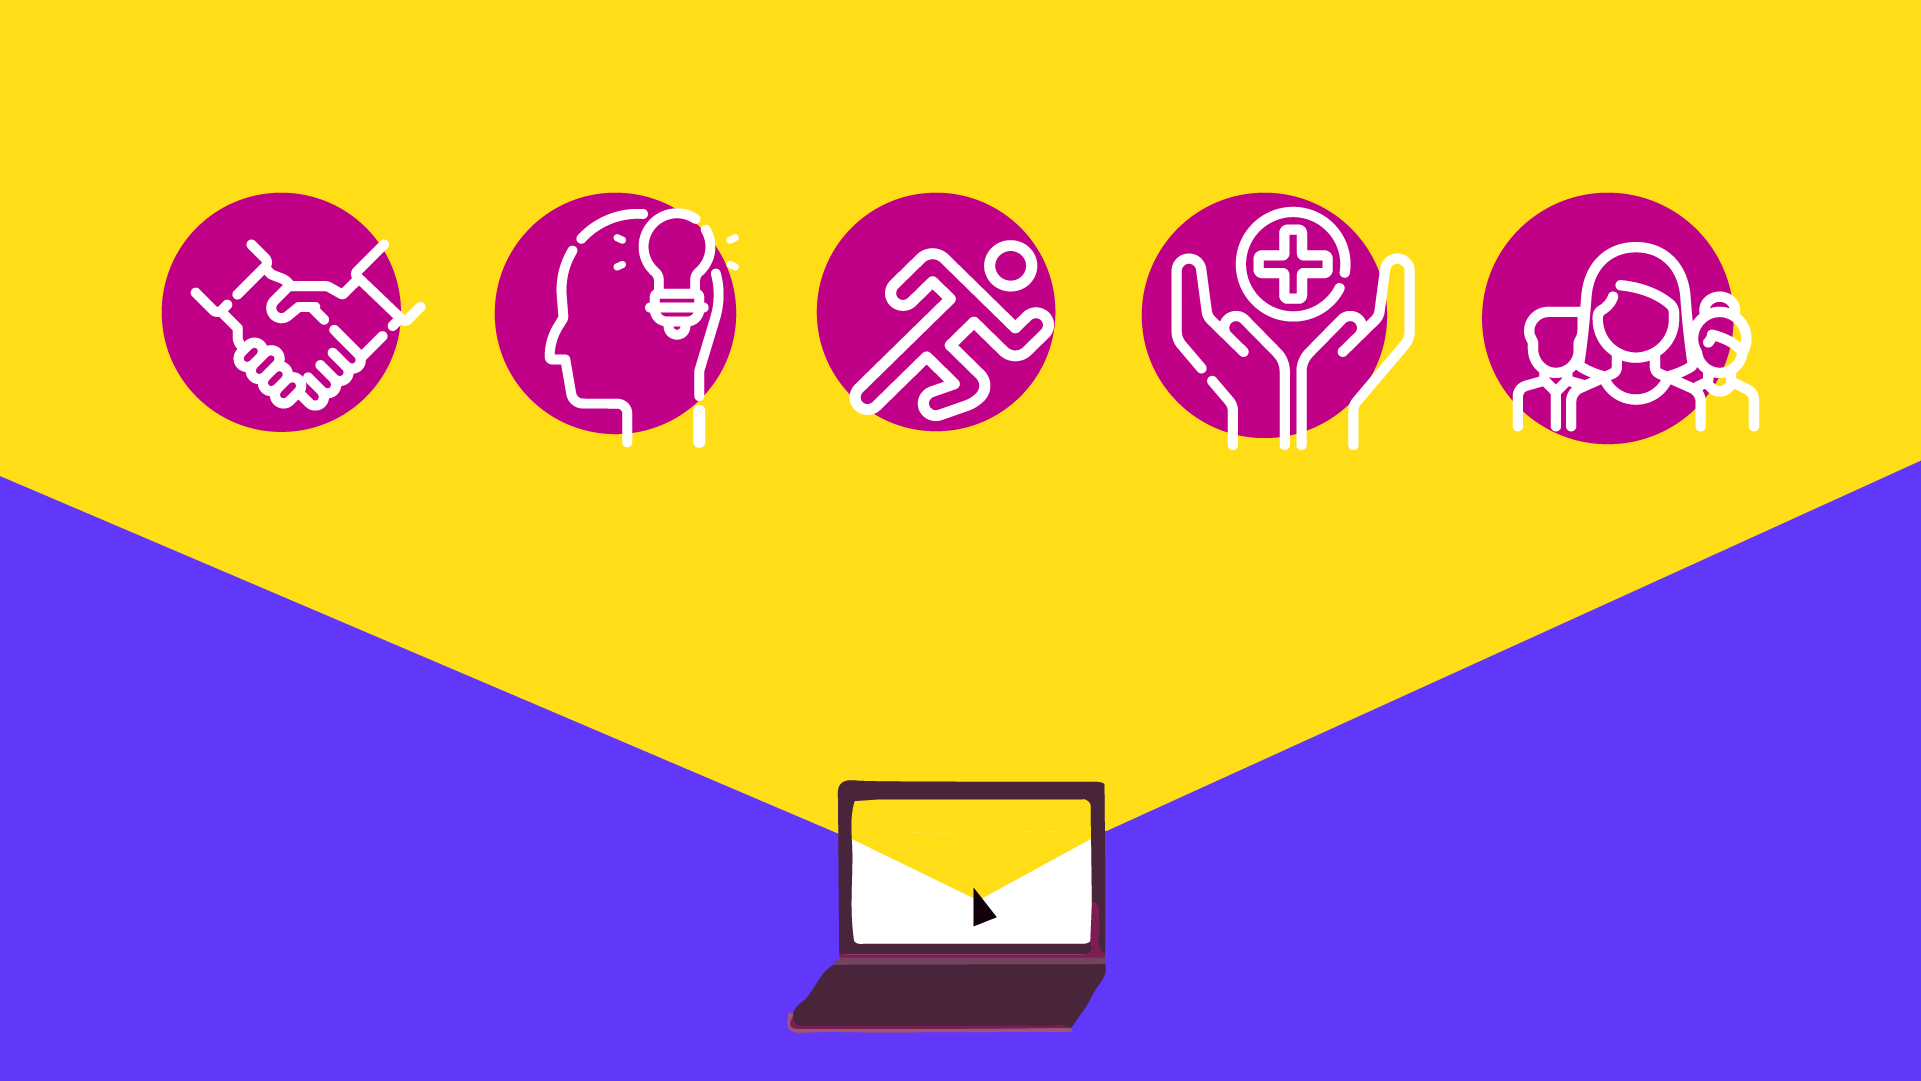 ilustración con 5 íconos de deporte, bienestar, salud alumnos, saliendo de una laptop. Fondo amarillo y azul